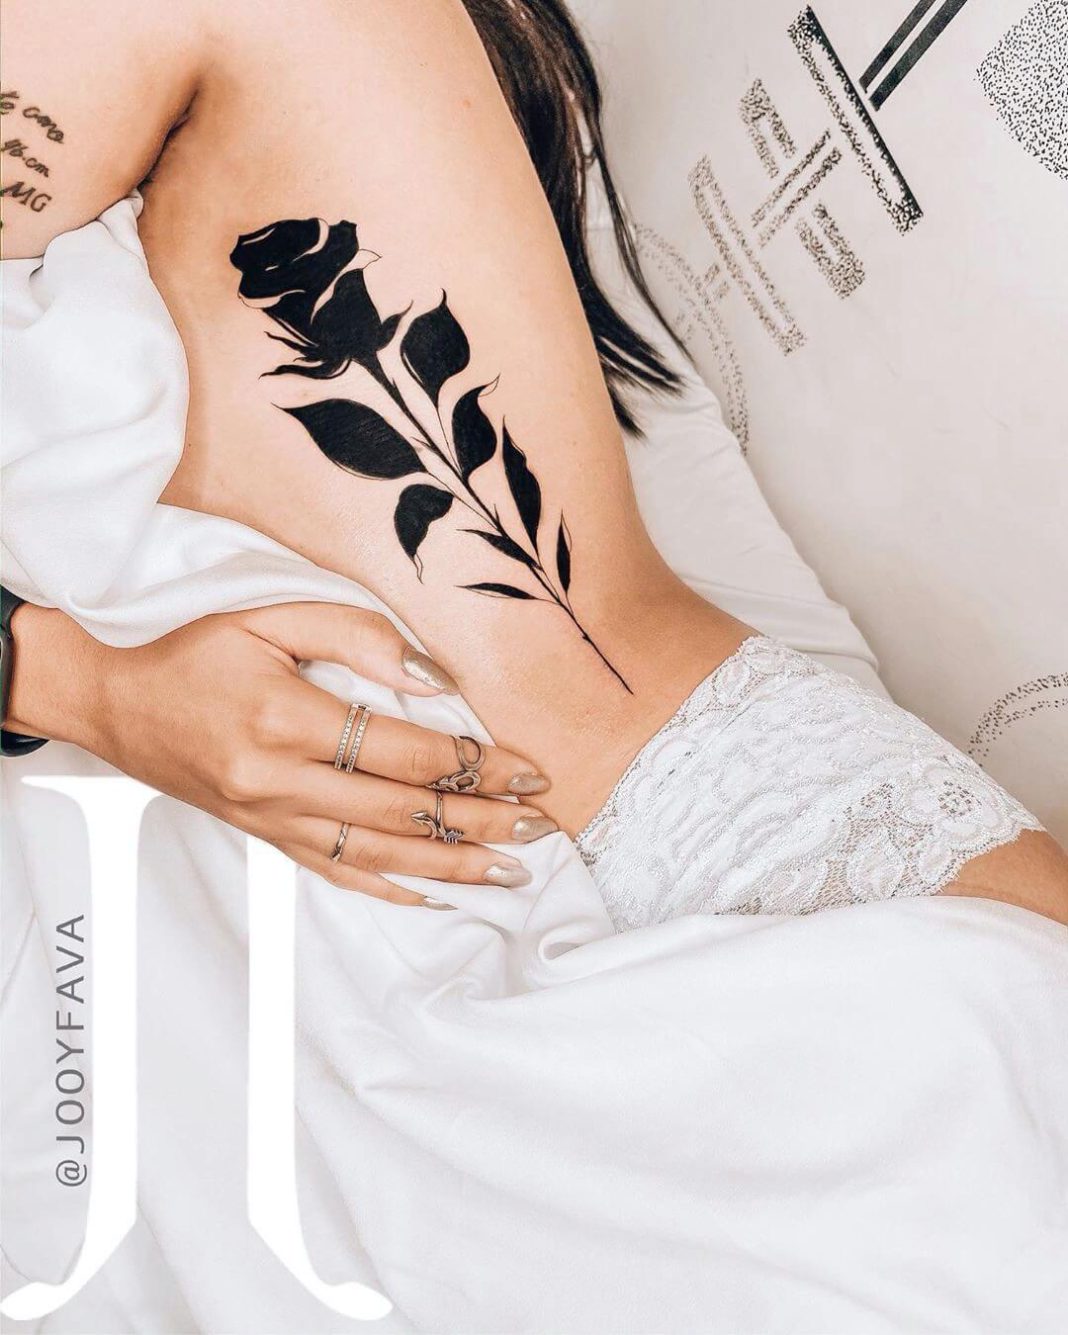 Fotos de tatoo femininas